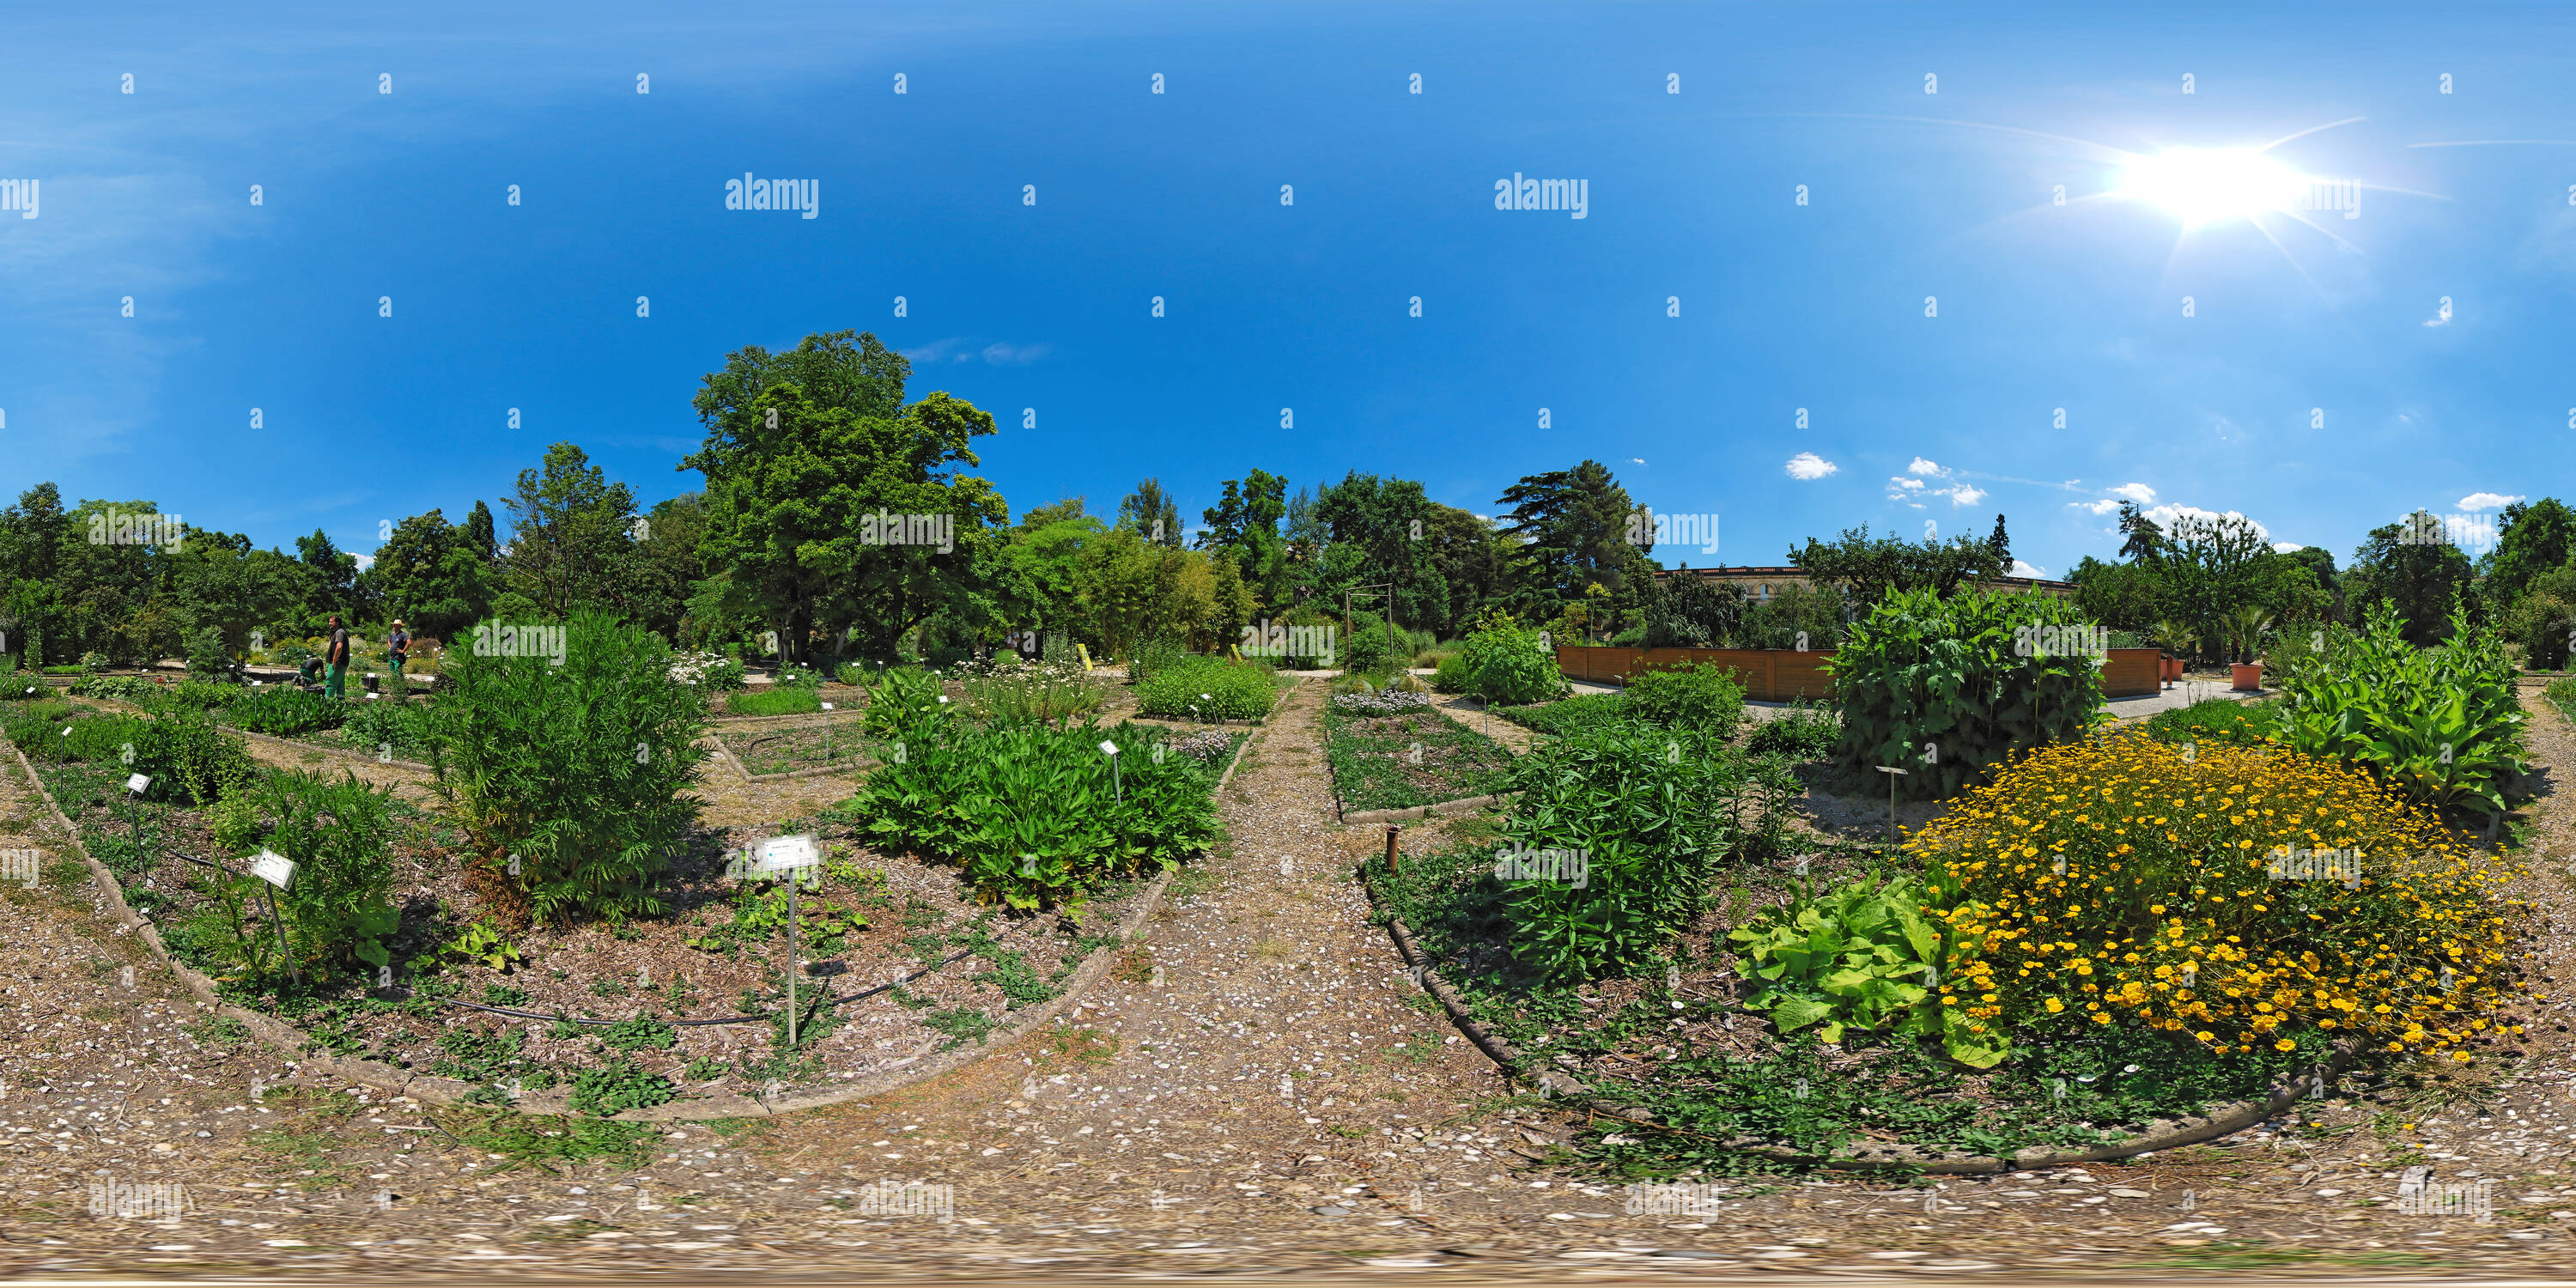 360° view of Entretien du jardin botanique du jardin public de Bordeaux